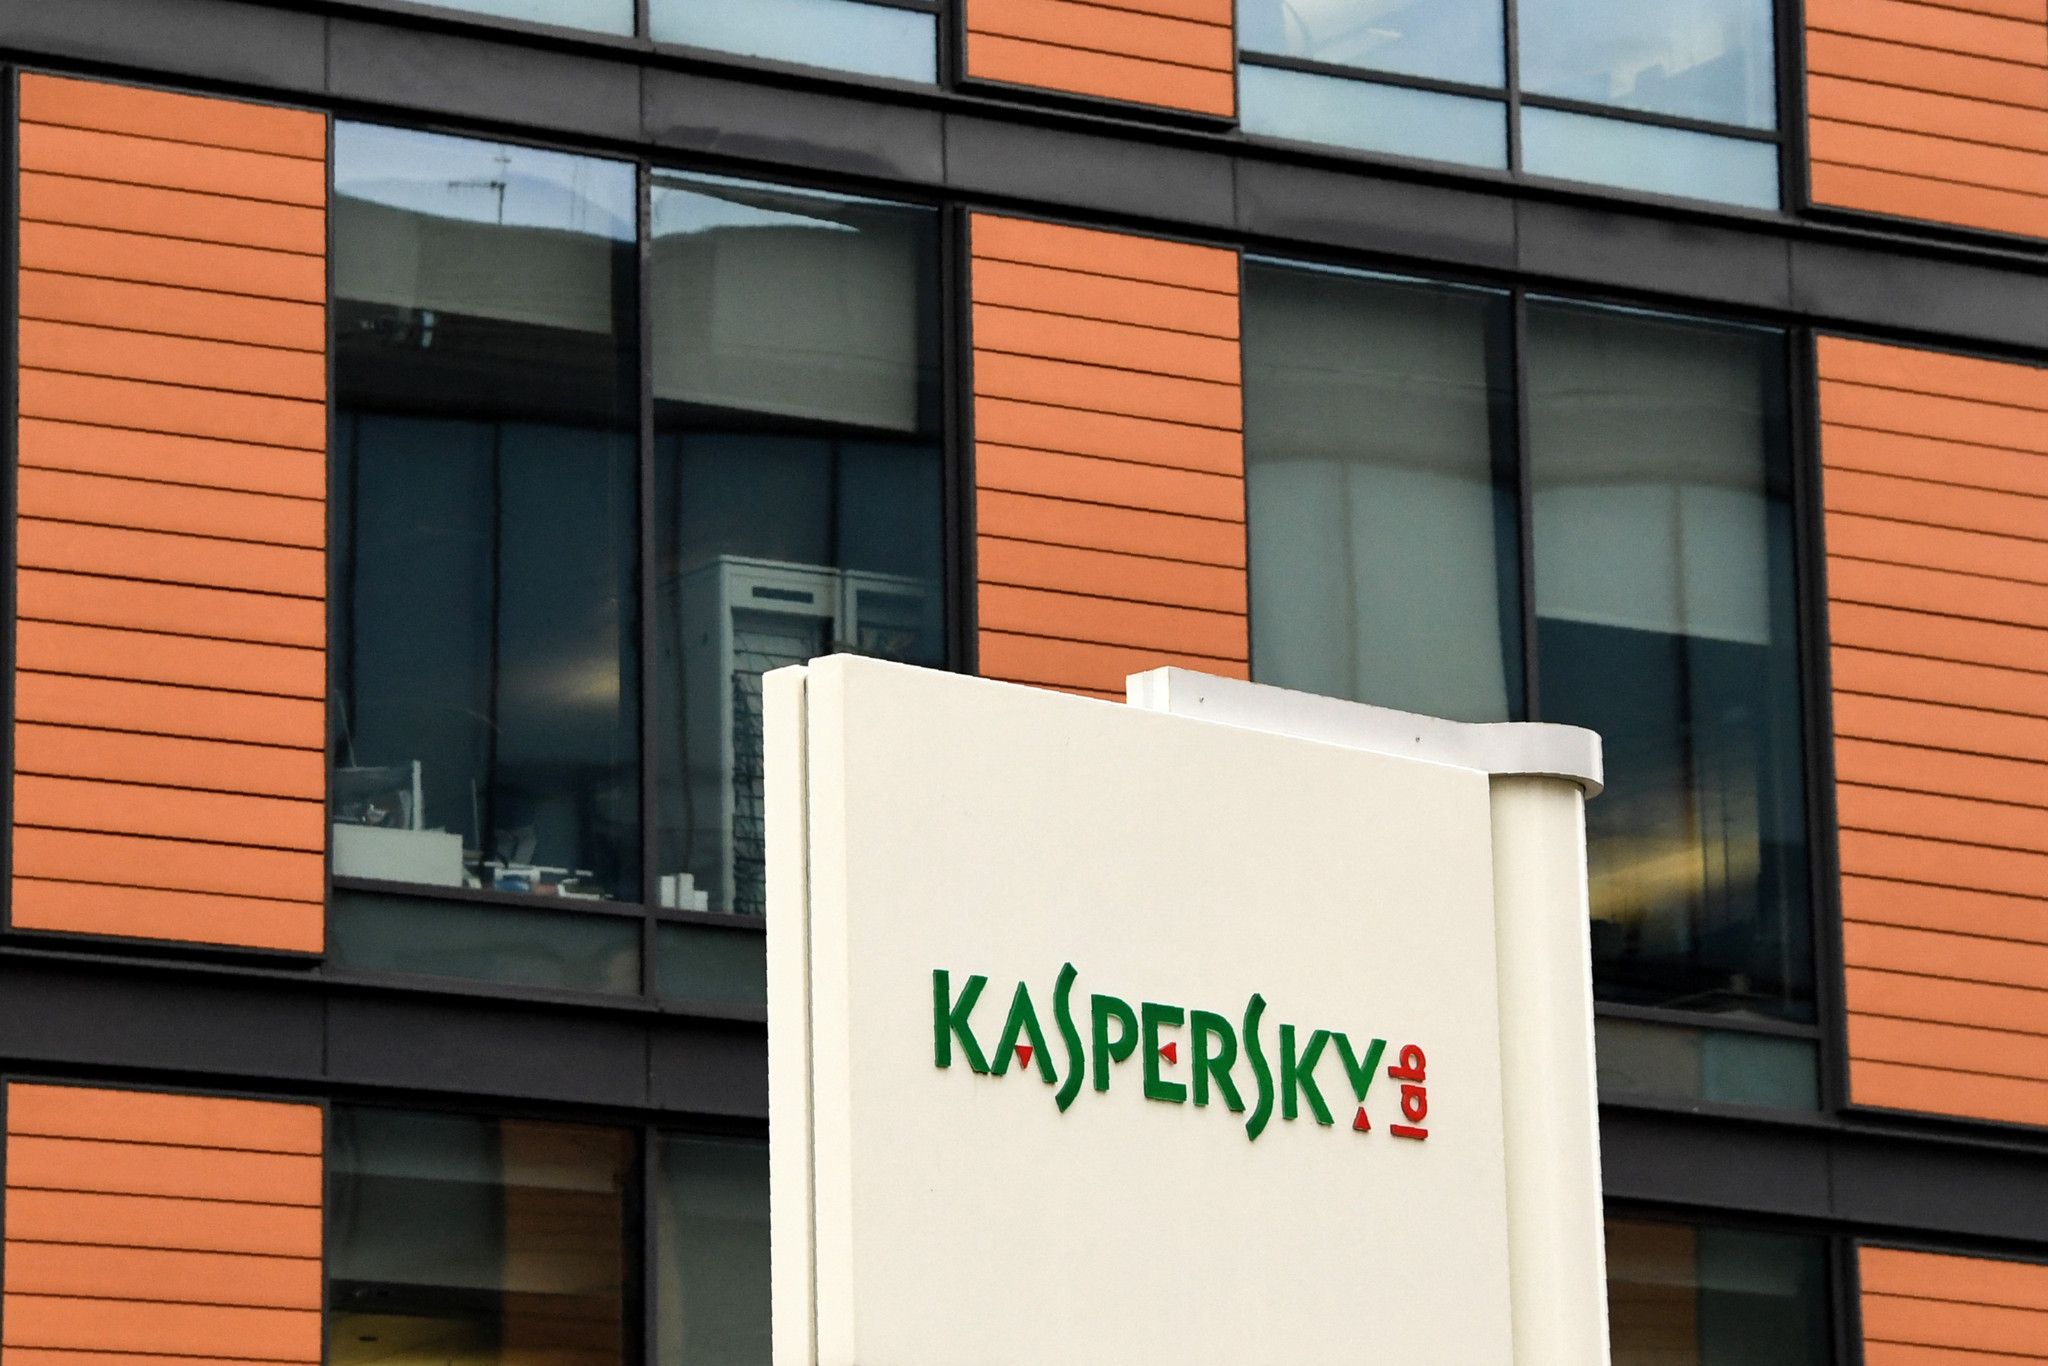 Les États-Unis interdisent le logiciel antivirus russe Kaspersky